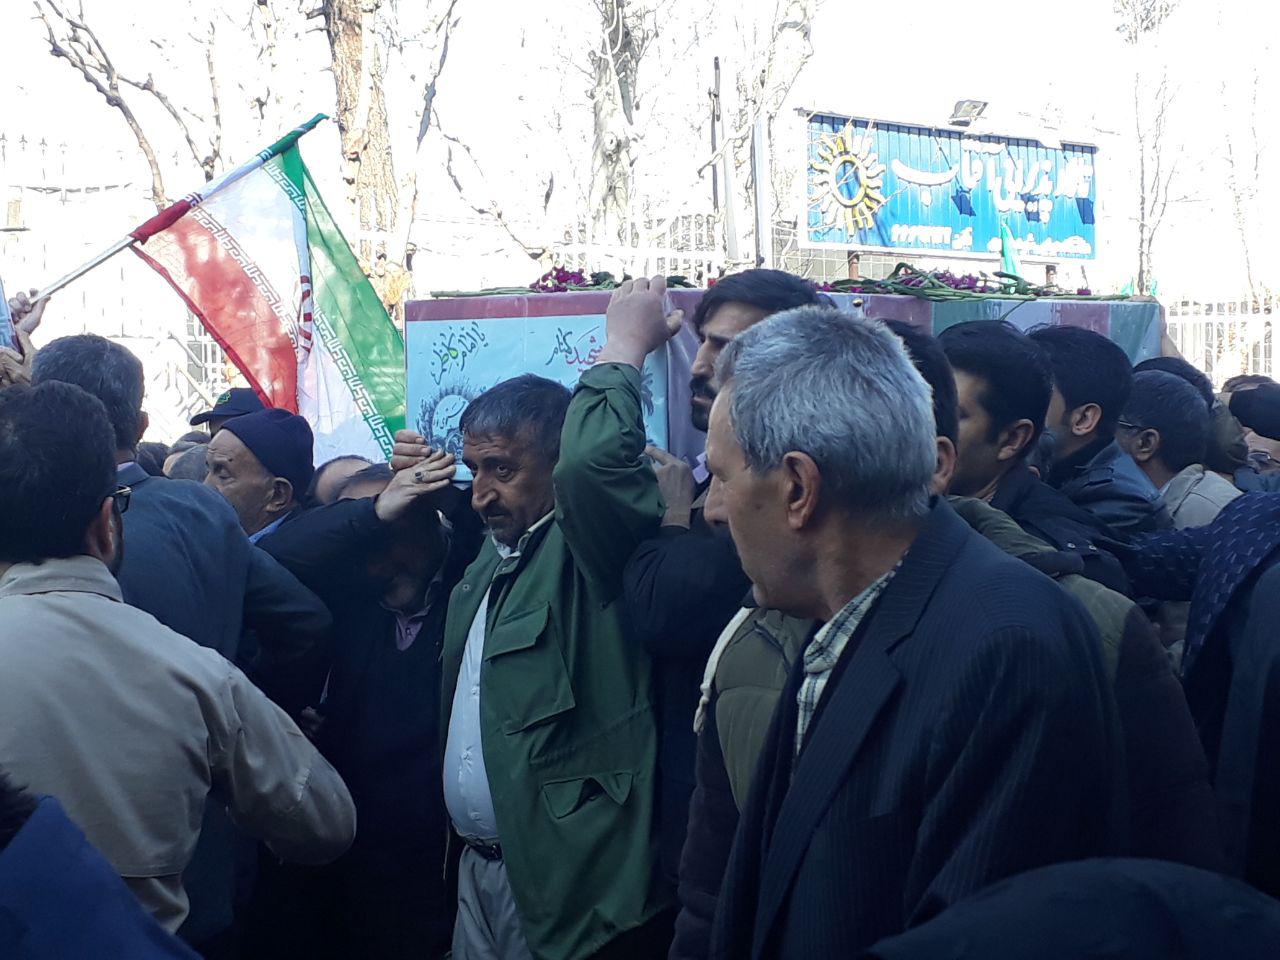 پیکرهای 2 شهید آسمانی در مهرآباد تهران تشییع شد